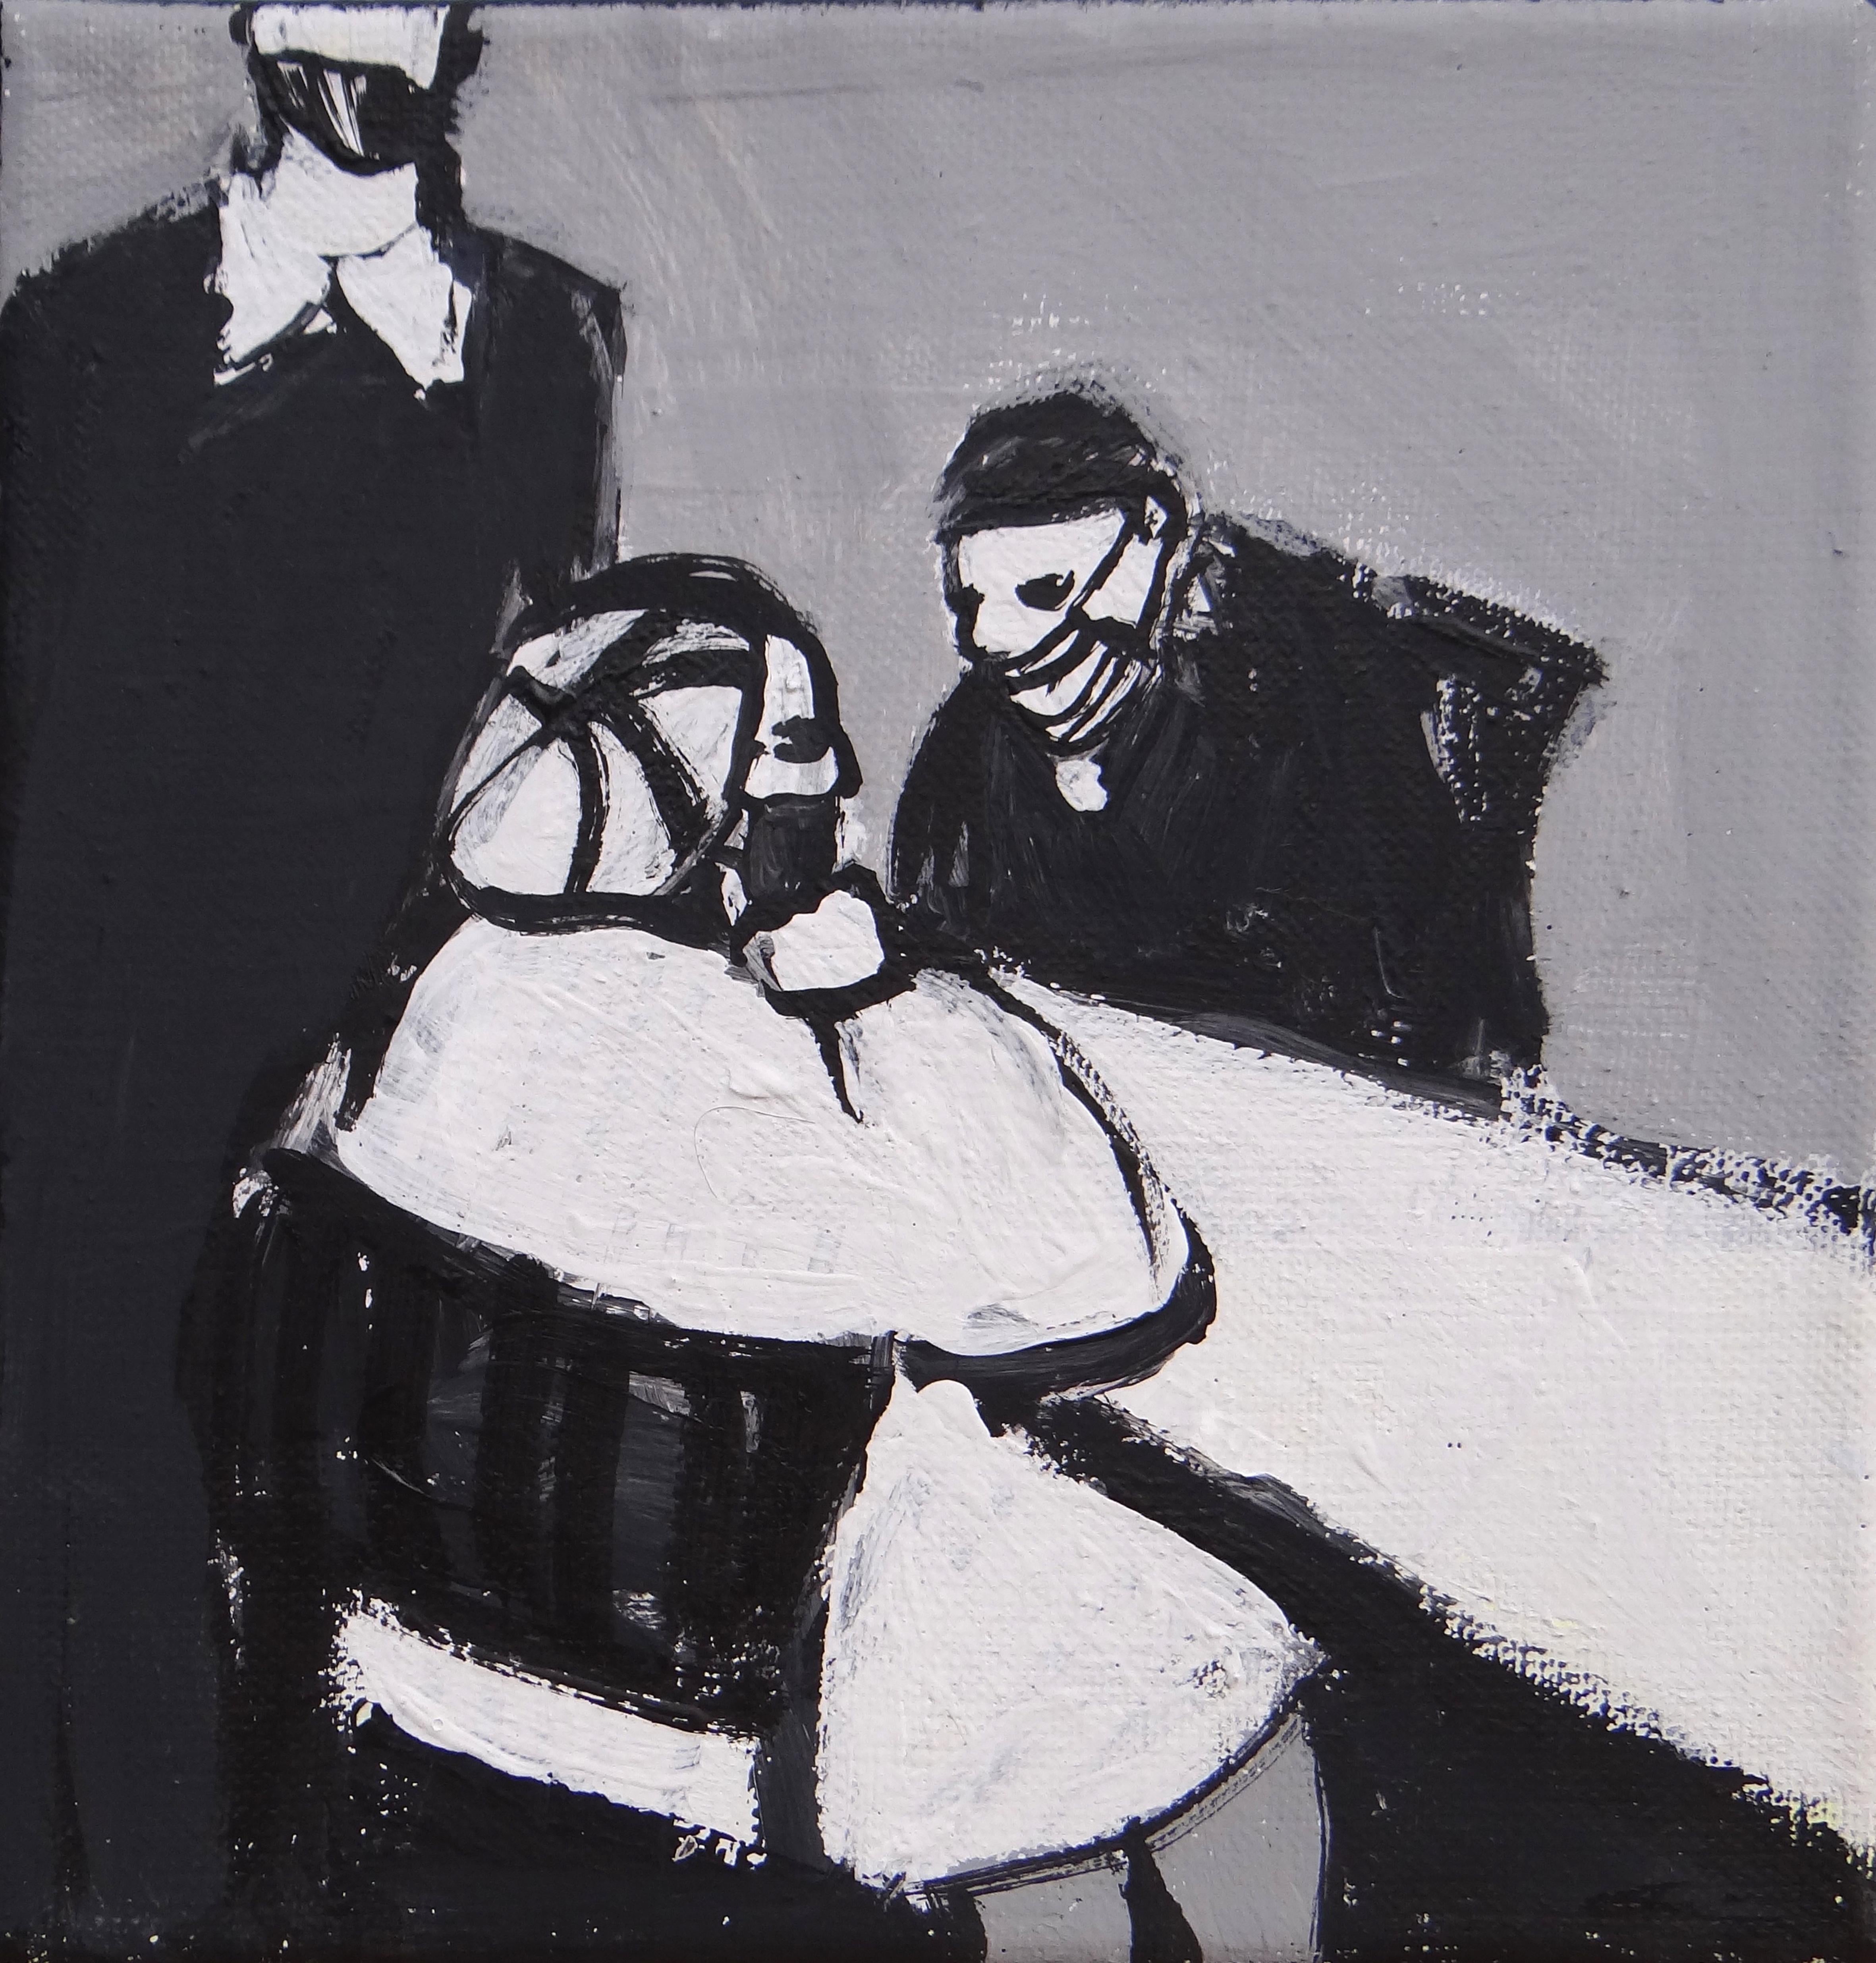 Dans la cafétéria  - Peinture contemporaine expressive et symbolique en noir et blanc